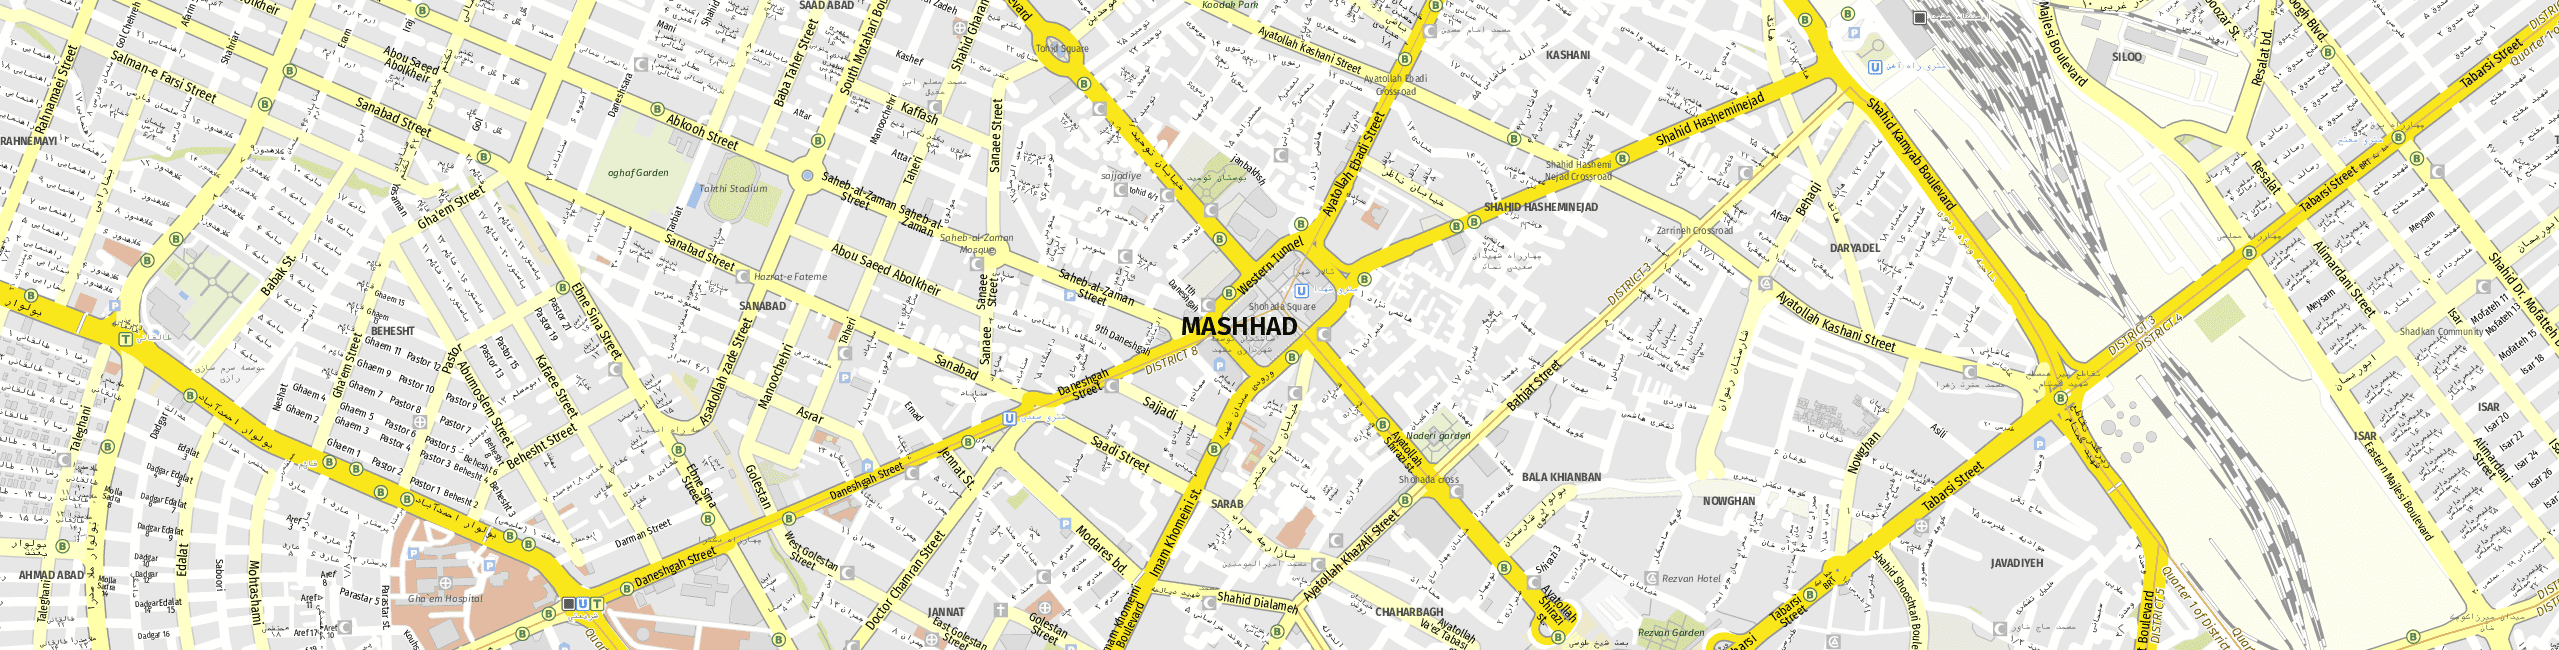 Stadtplan Maschhad zum Downloaden.